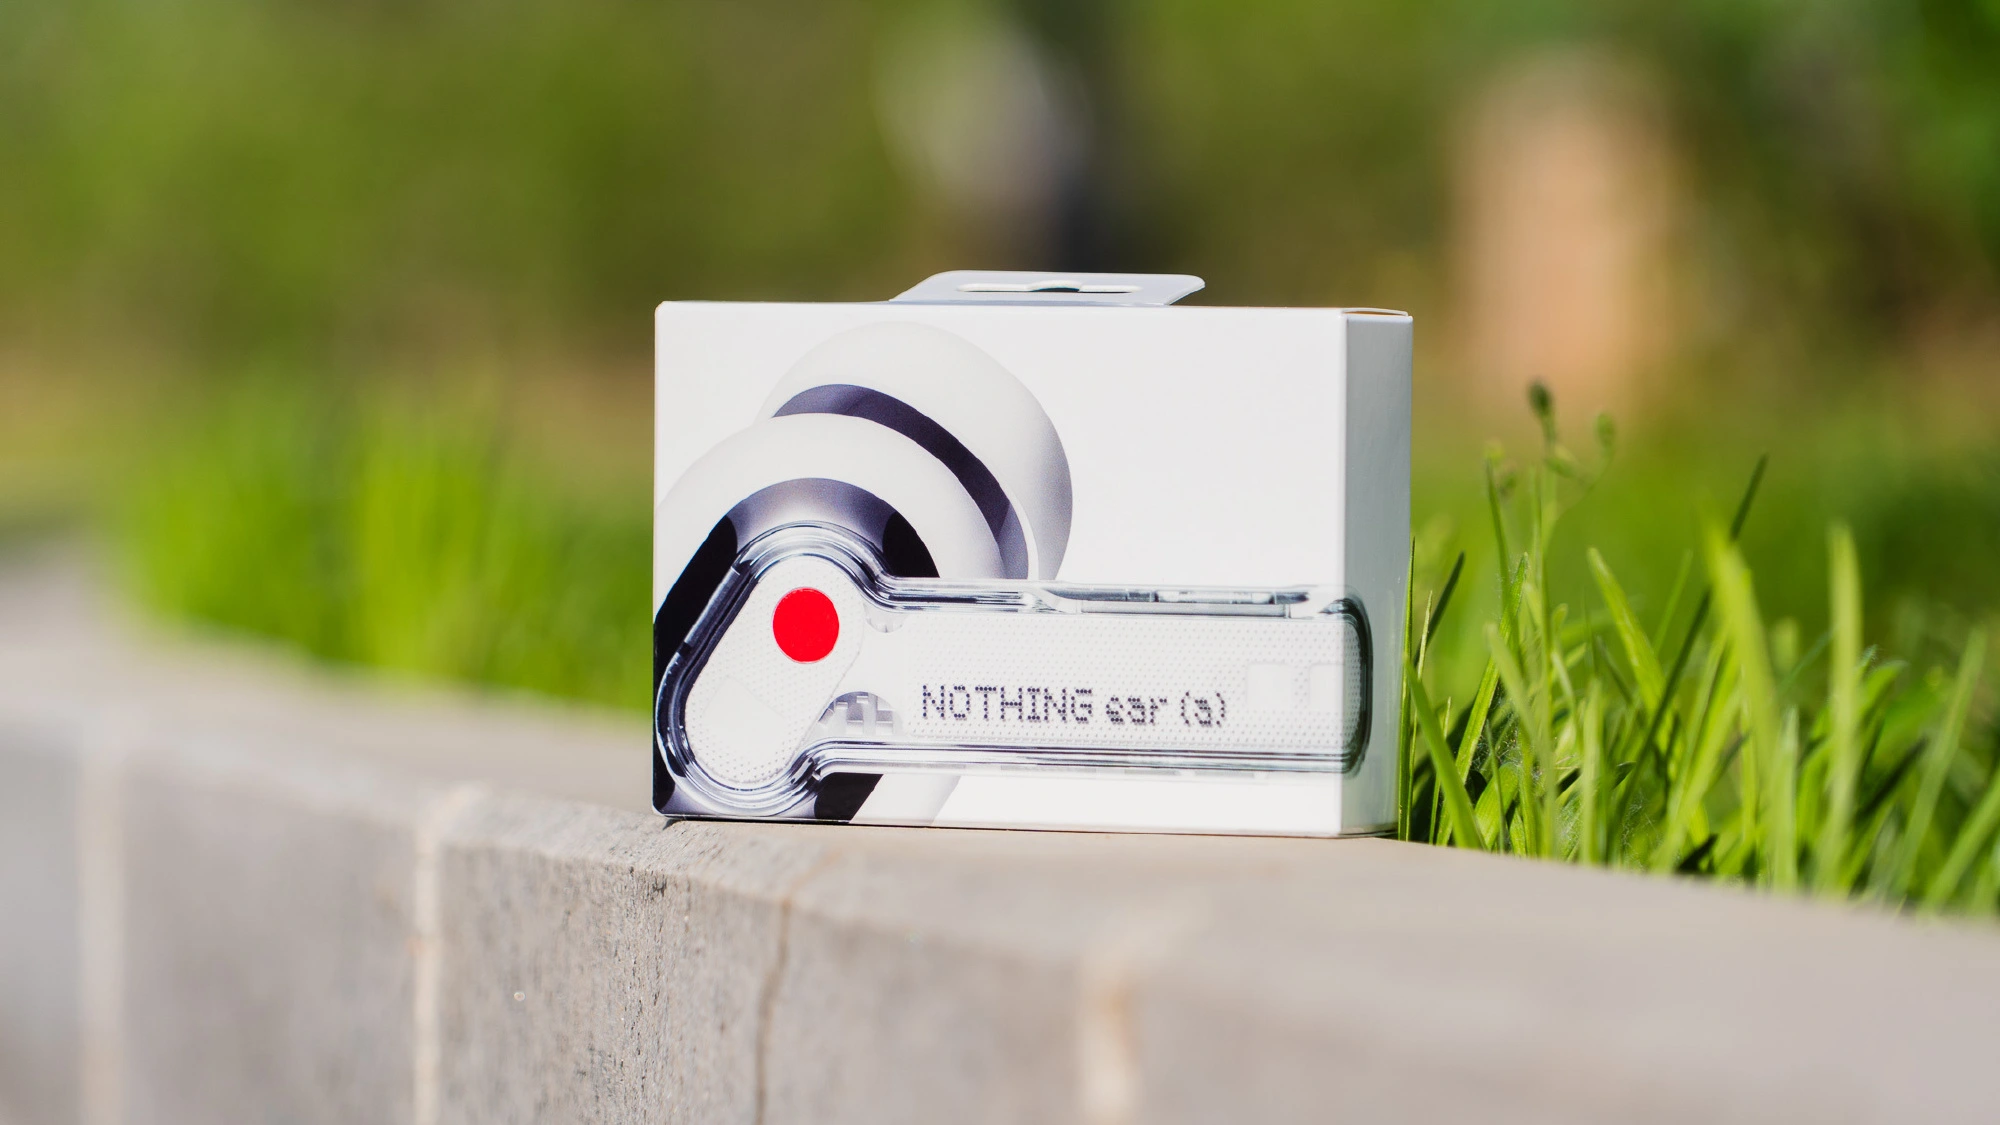 Tai nghe không dây Nothing Ear (a) được thiết kế với vỏ ngoài trong suốt, cho phép người dùng quan sát các linh kiện bên trong. Thiết kế này khác biệt so với phần lớn các sản phẩm cùng loại trên thị trường, vốn thường ưa chuộng vẻ ngoài kín đáo hơn.